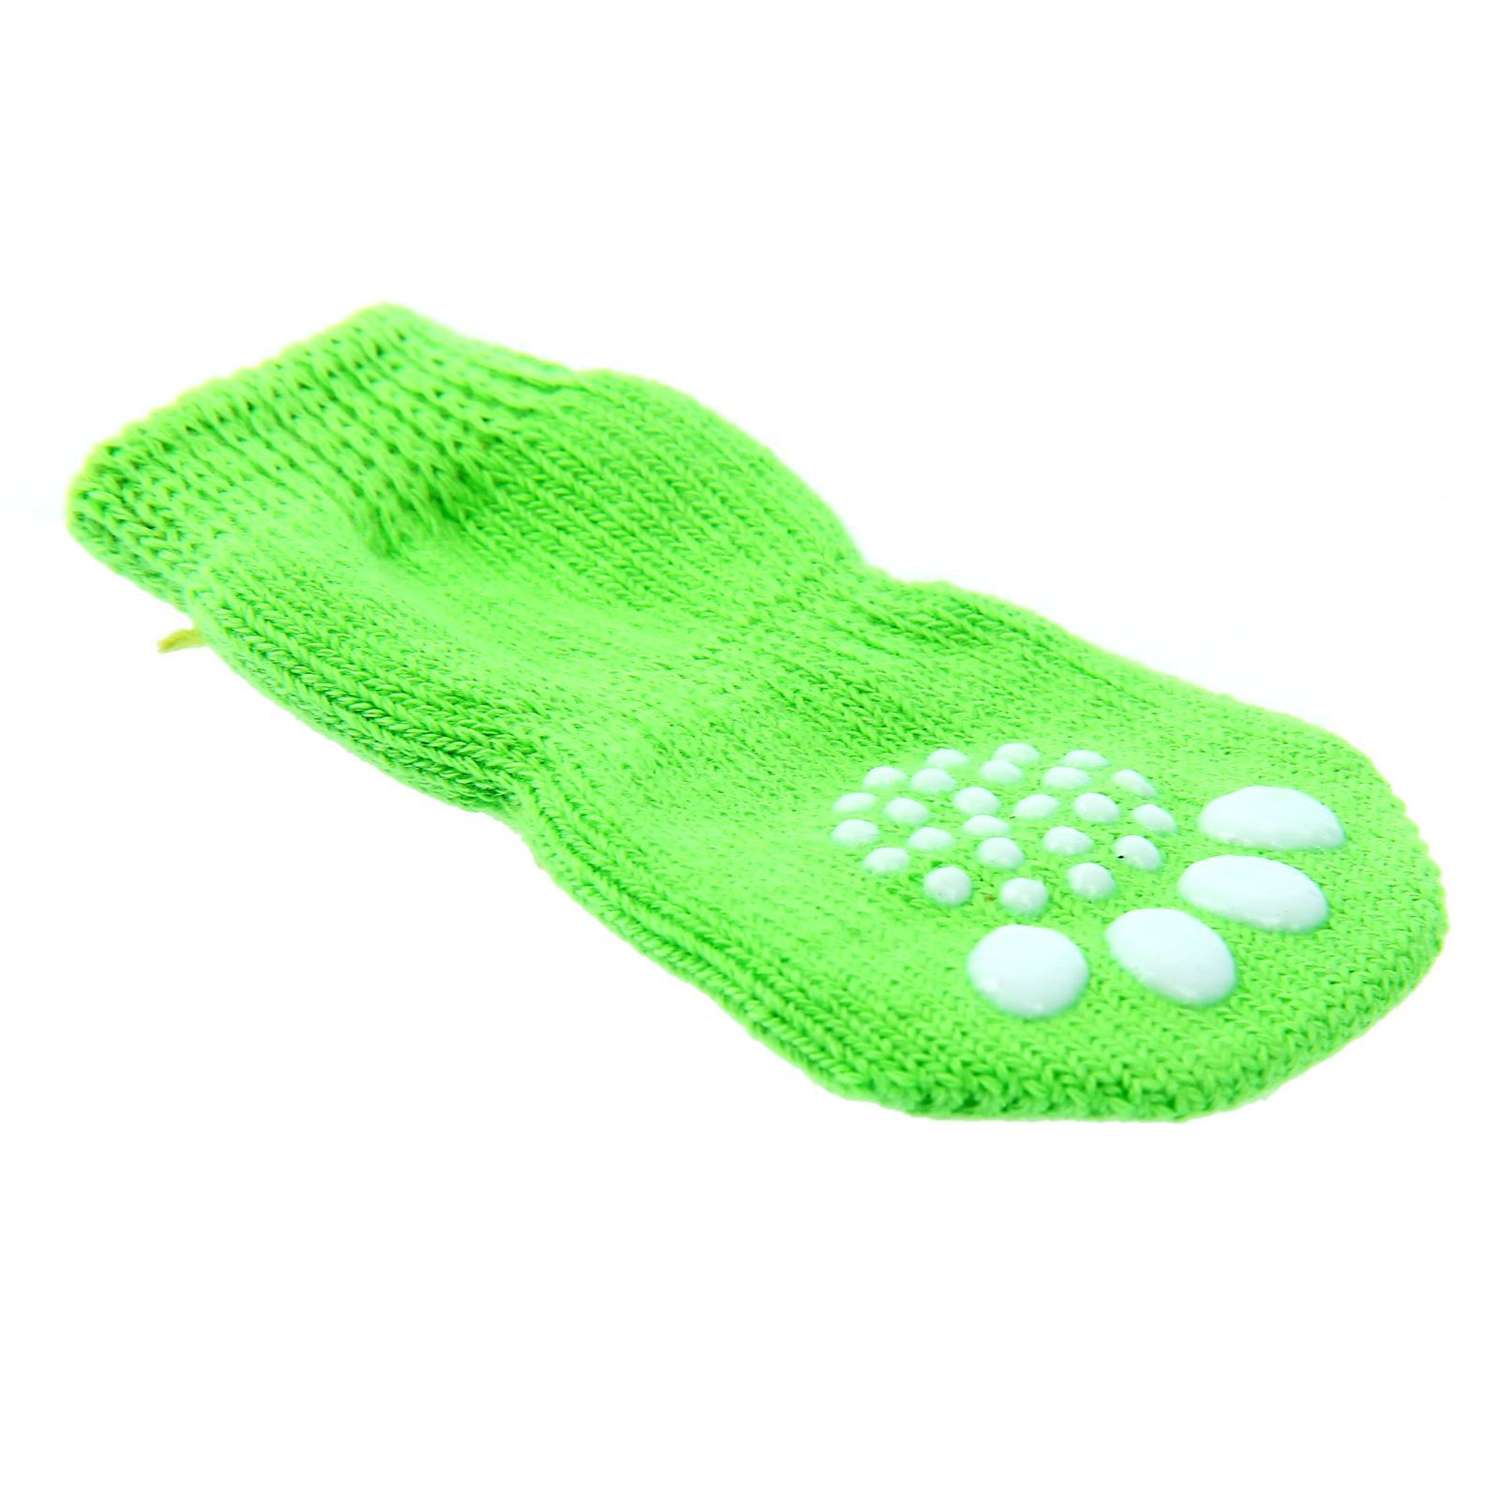 Носки Пижон нескользящие «Улыбка» размер М набор 4 шт. зеленые - фото 2